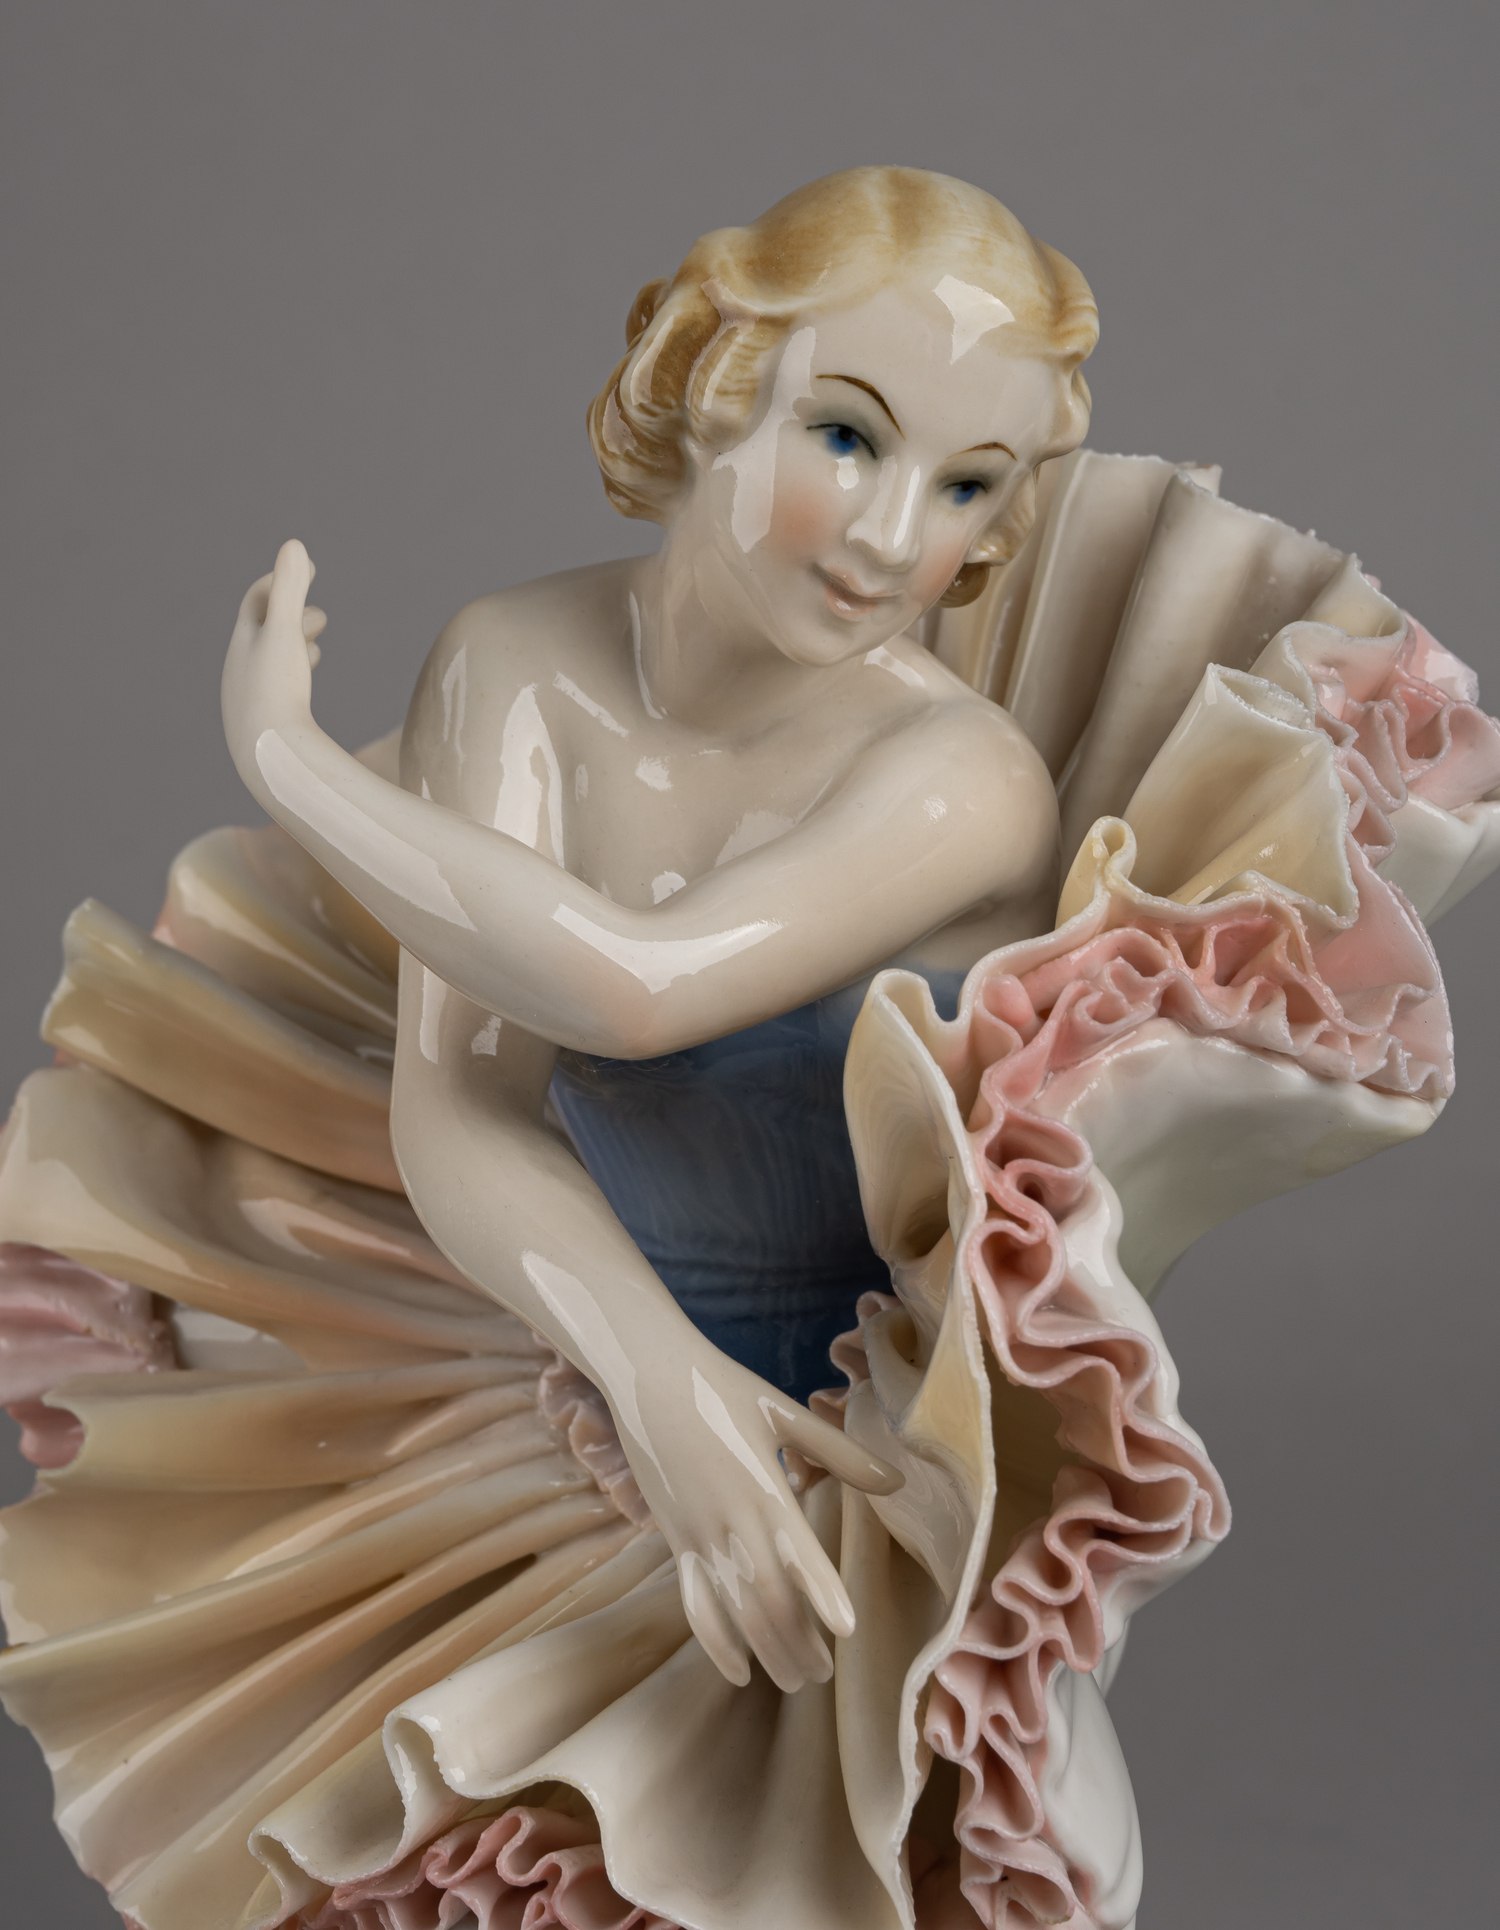 Статуэтка «Балерина в летящей пачке». <br>Германия, Рудольштадт, мануфактура Карла Энса (Karl Ens), 1920-30е годы.